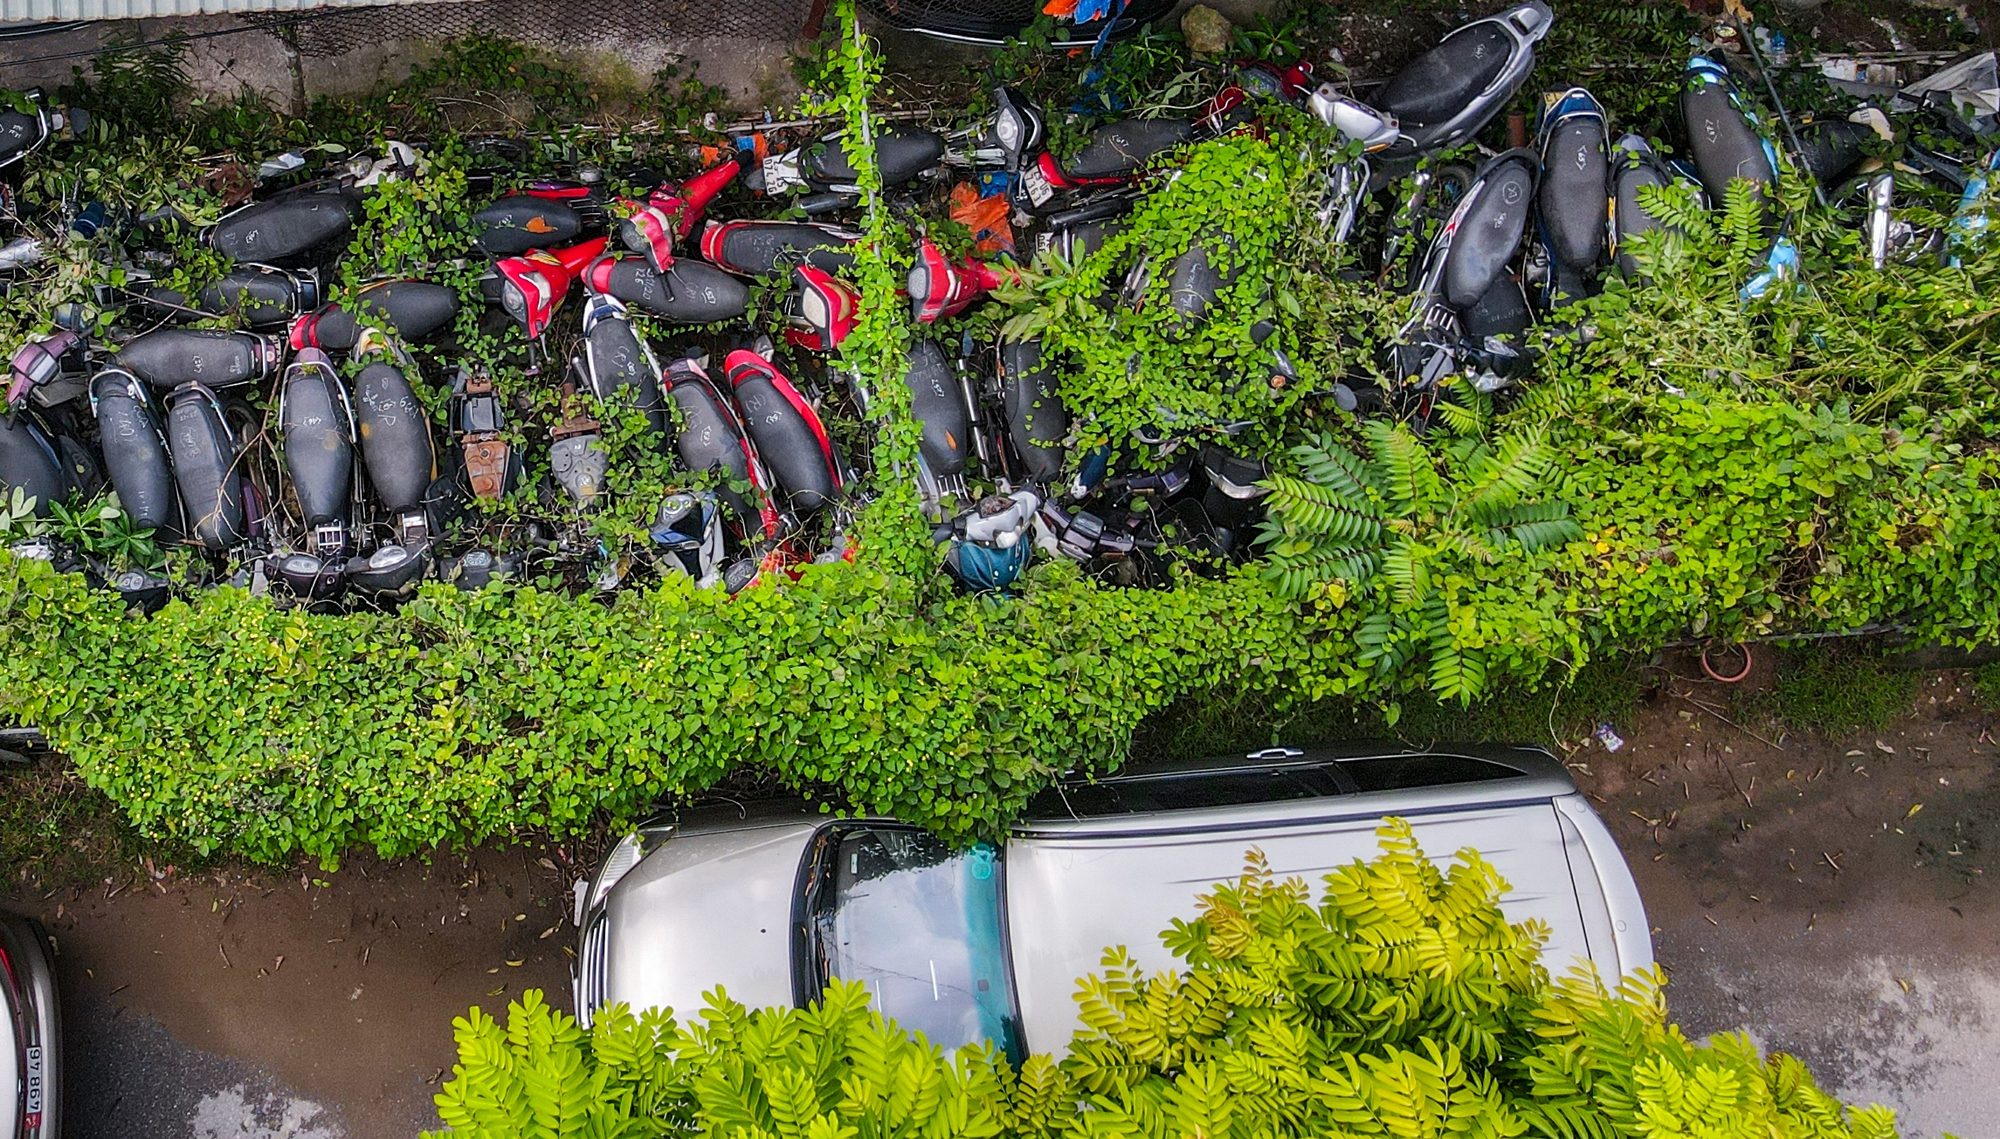 Hà Nội: Hàng nghìn chiếc xe máy vi phạm giao thông chồng chất lên nhau, cỏ mọc um tùm - Ảnh 13.